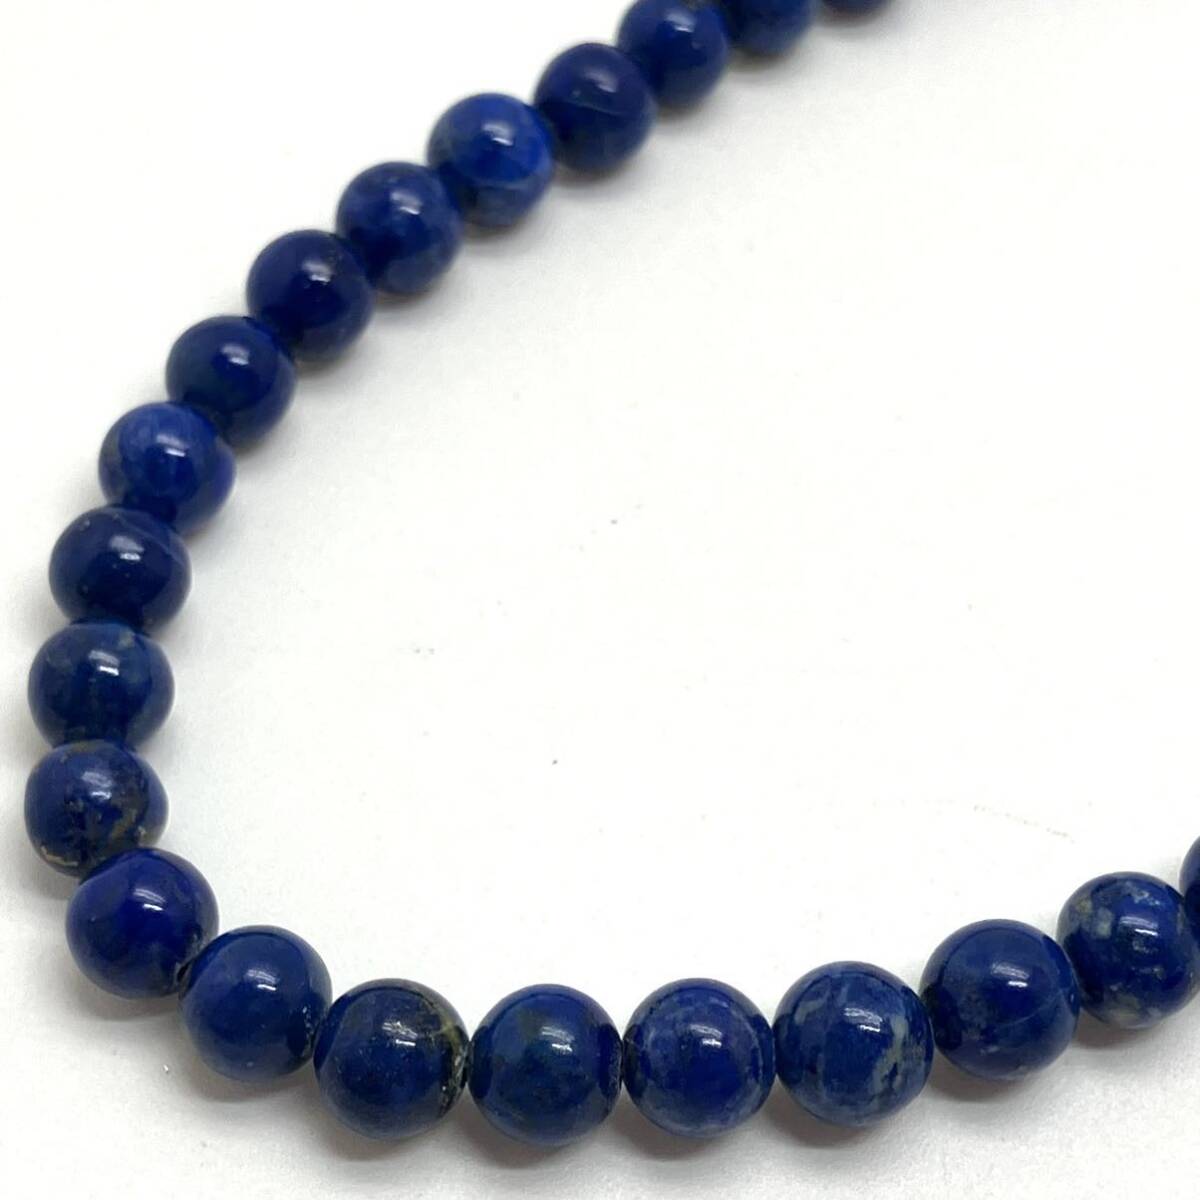 ［ラピスラズリネックレス5点おまとめ］m 重量約113.0g lapis lazuli 瑠璃 necklace accessory ペンダント pendant jewelry silver DA0 の画像5